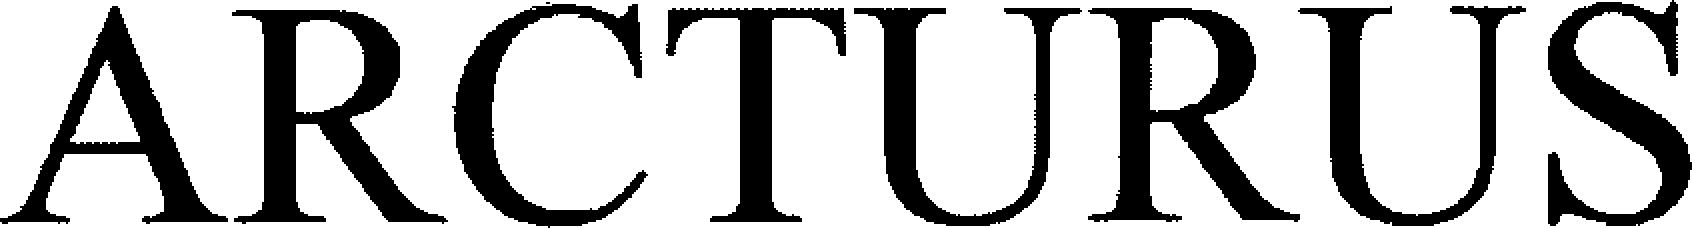 Trademark Logo ARCTURUS